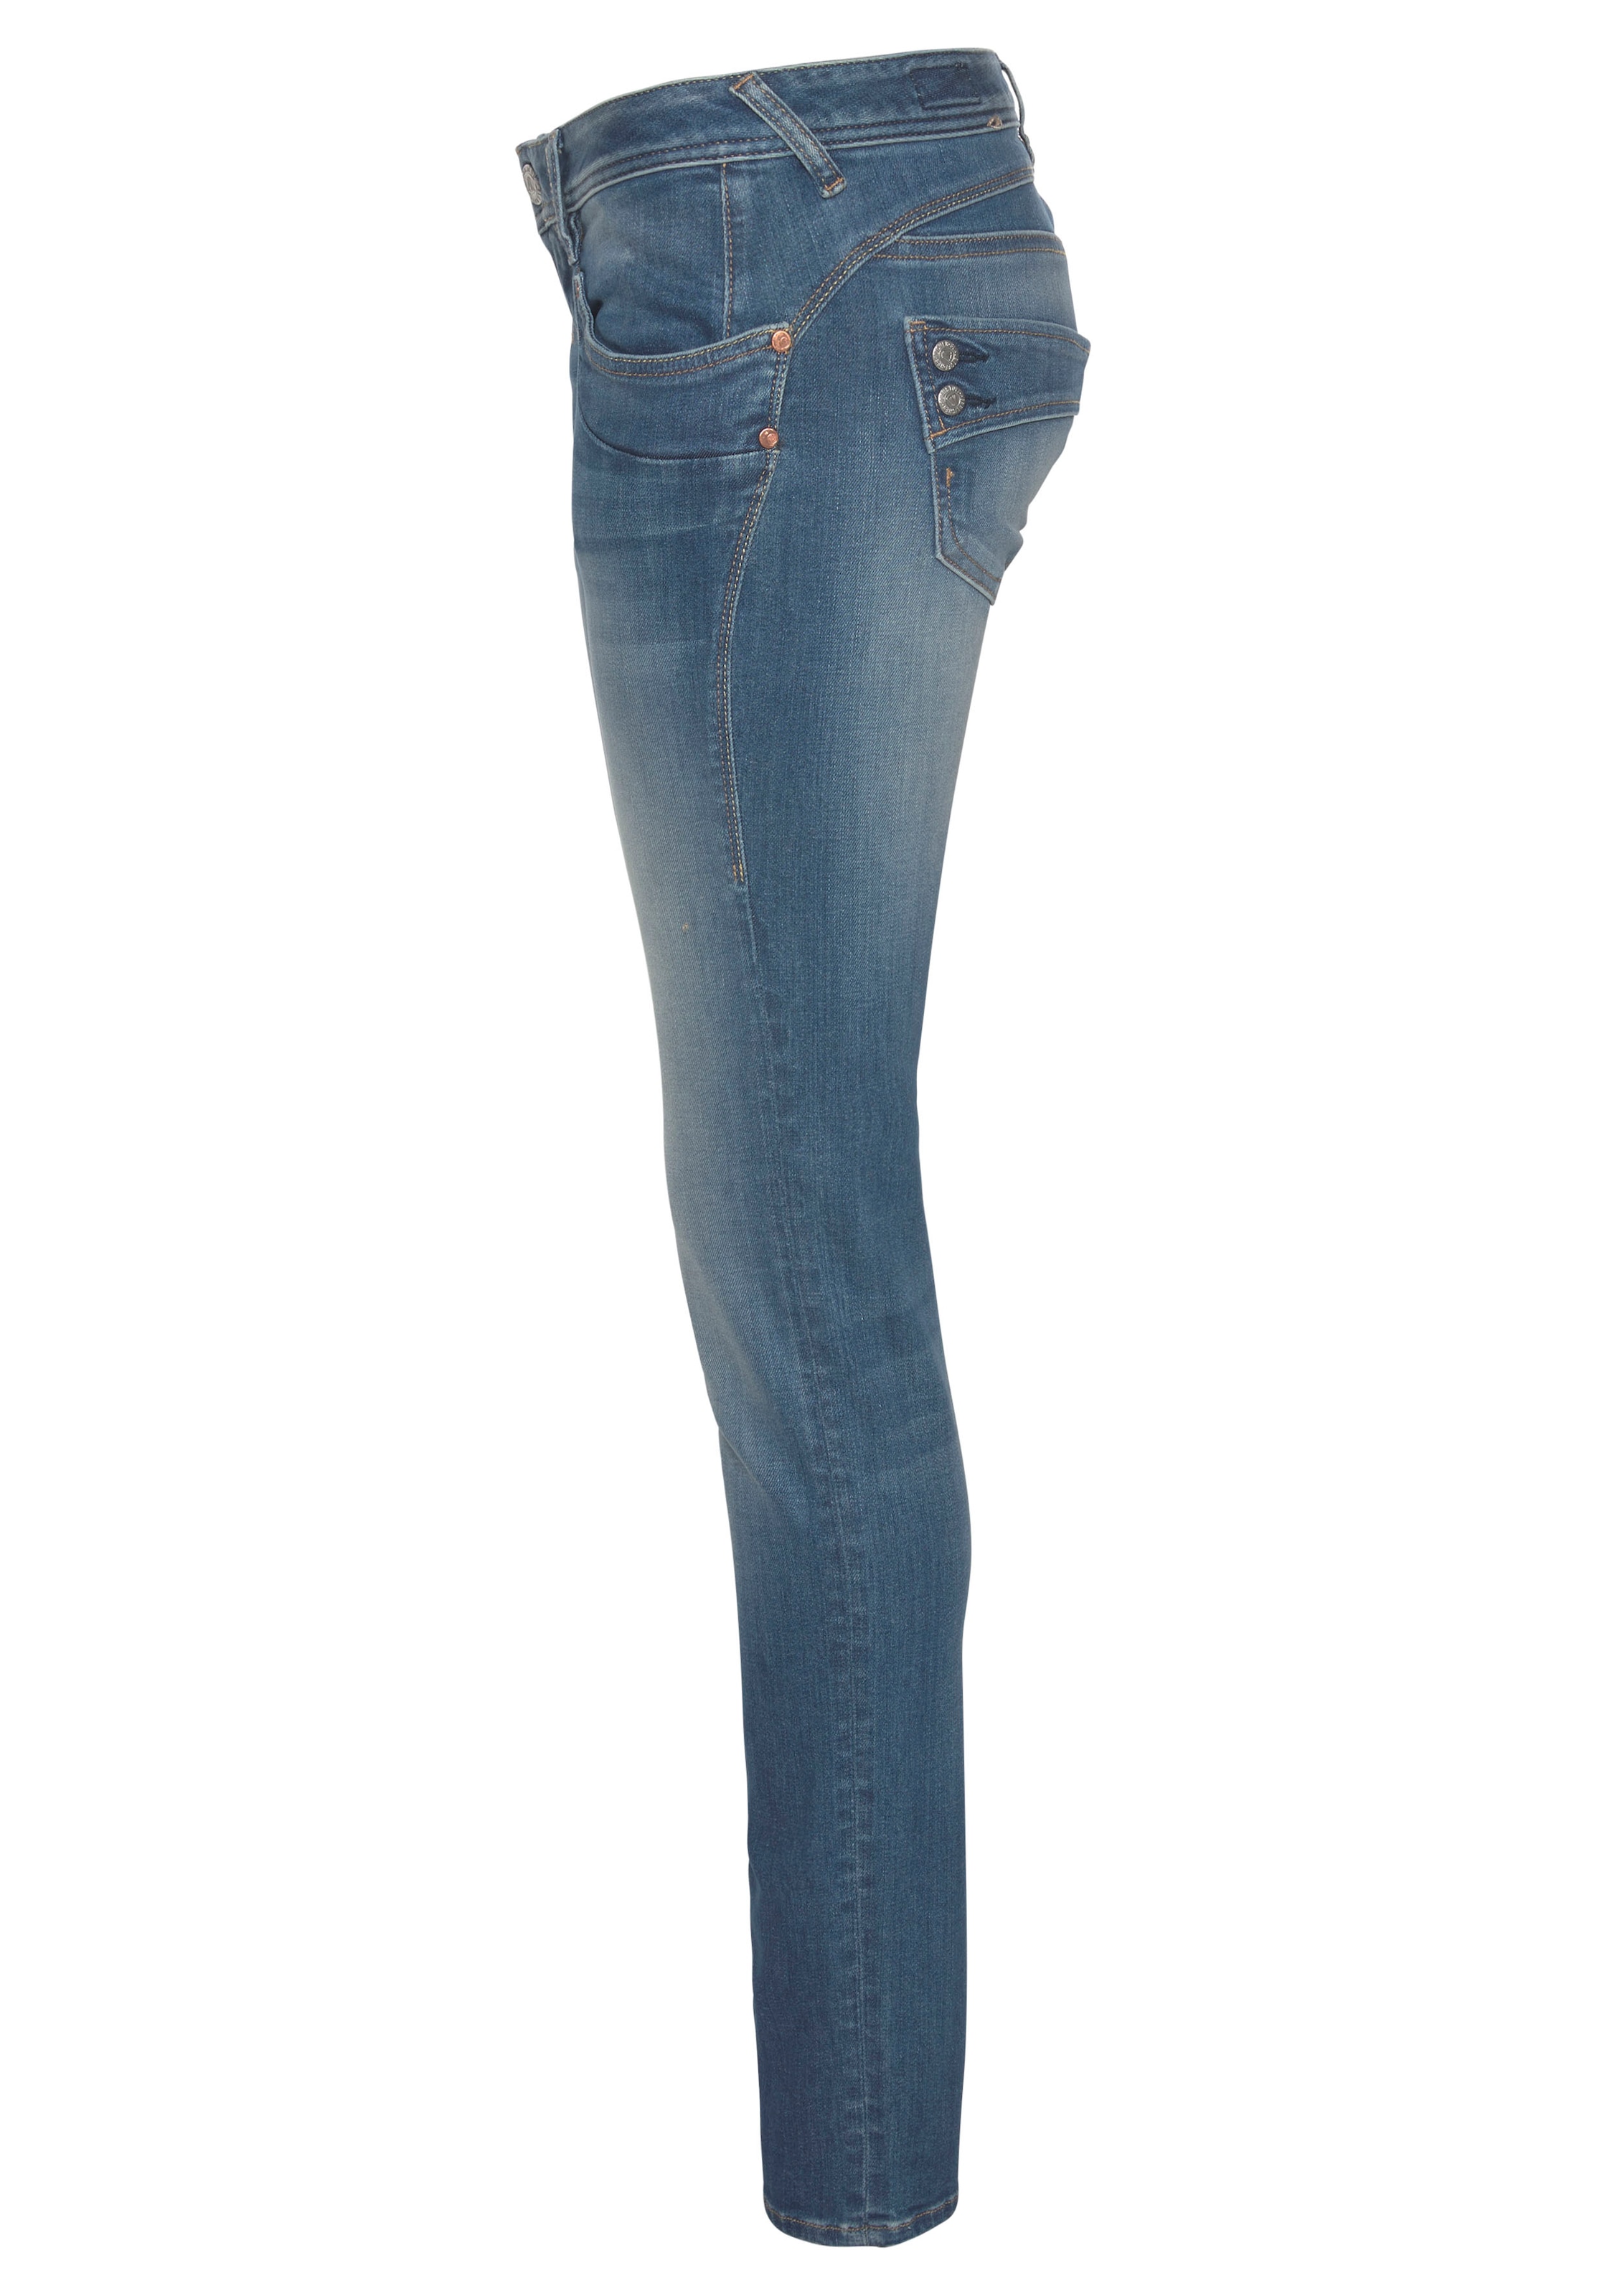 Herrlicher Slim-fit-Jeans »PIPER SLIM ORGANIC«, Kitotex Technology umweltfreundlich kaufen dank